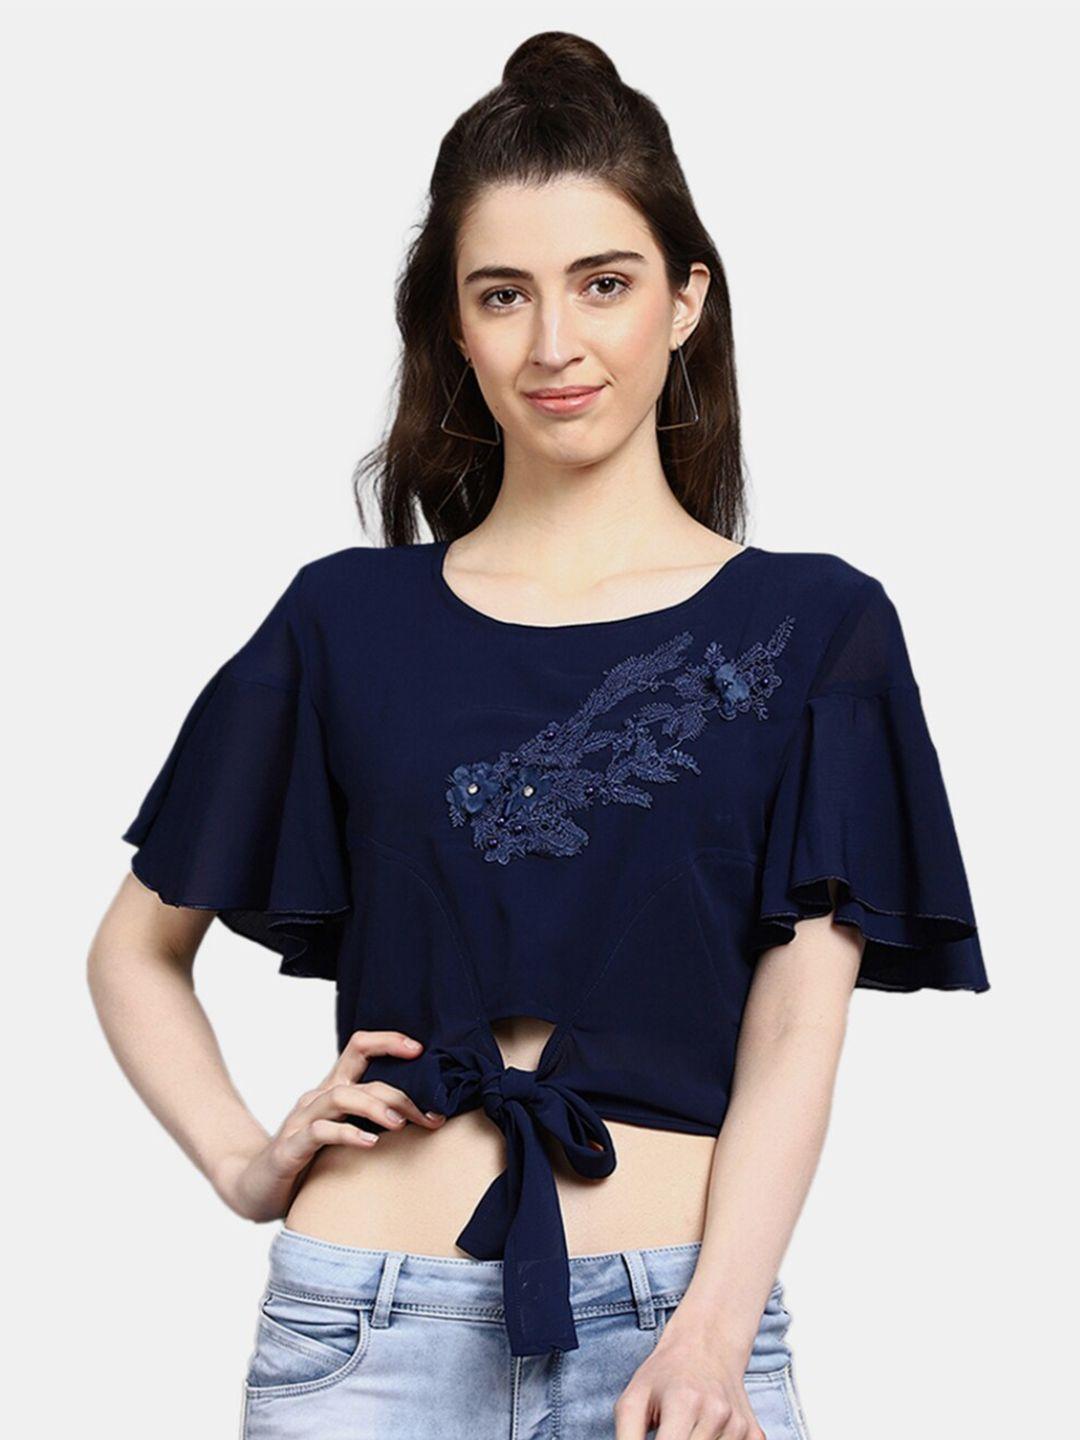 v-mart women western solid navy blue floral embellished crop top